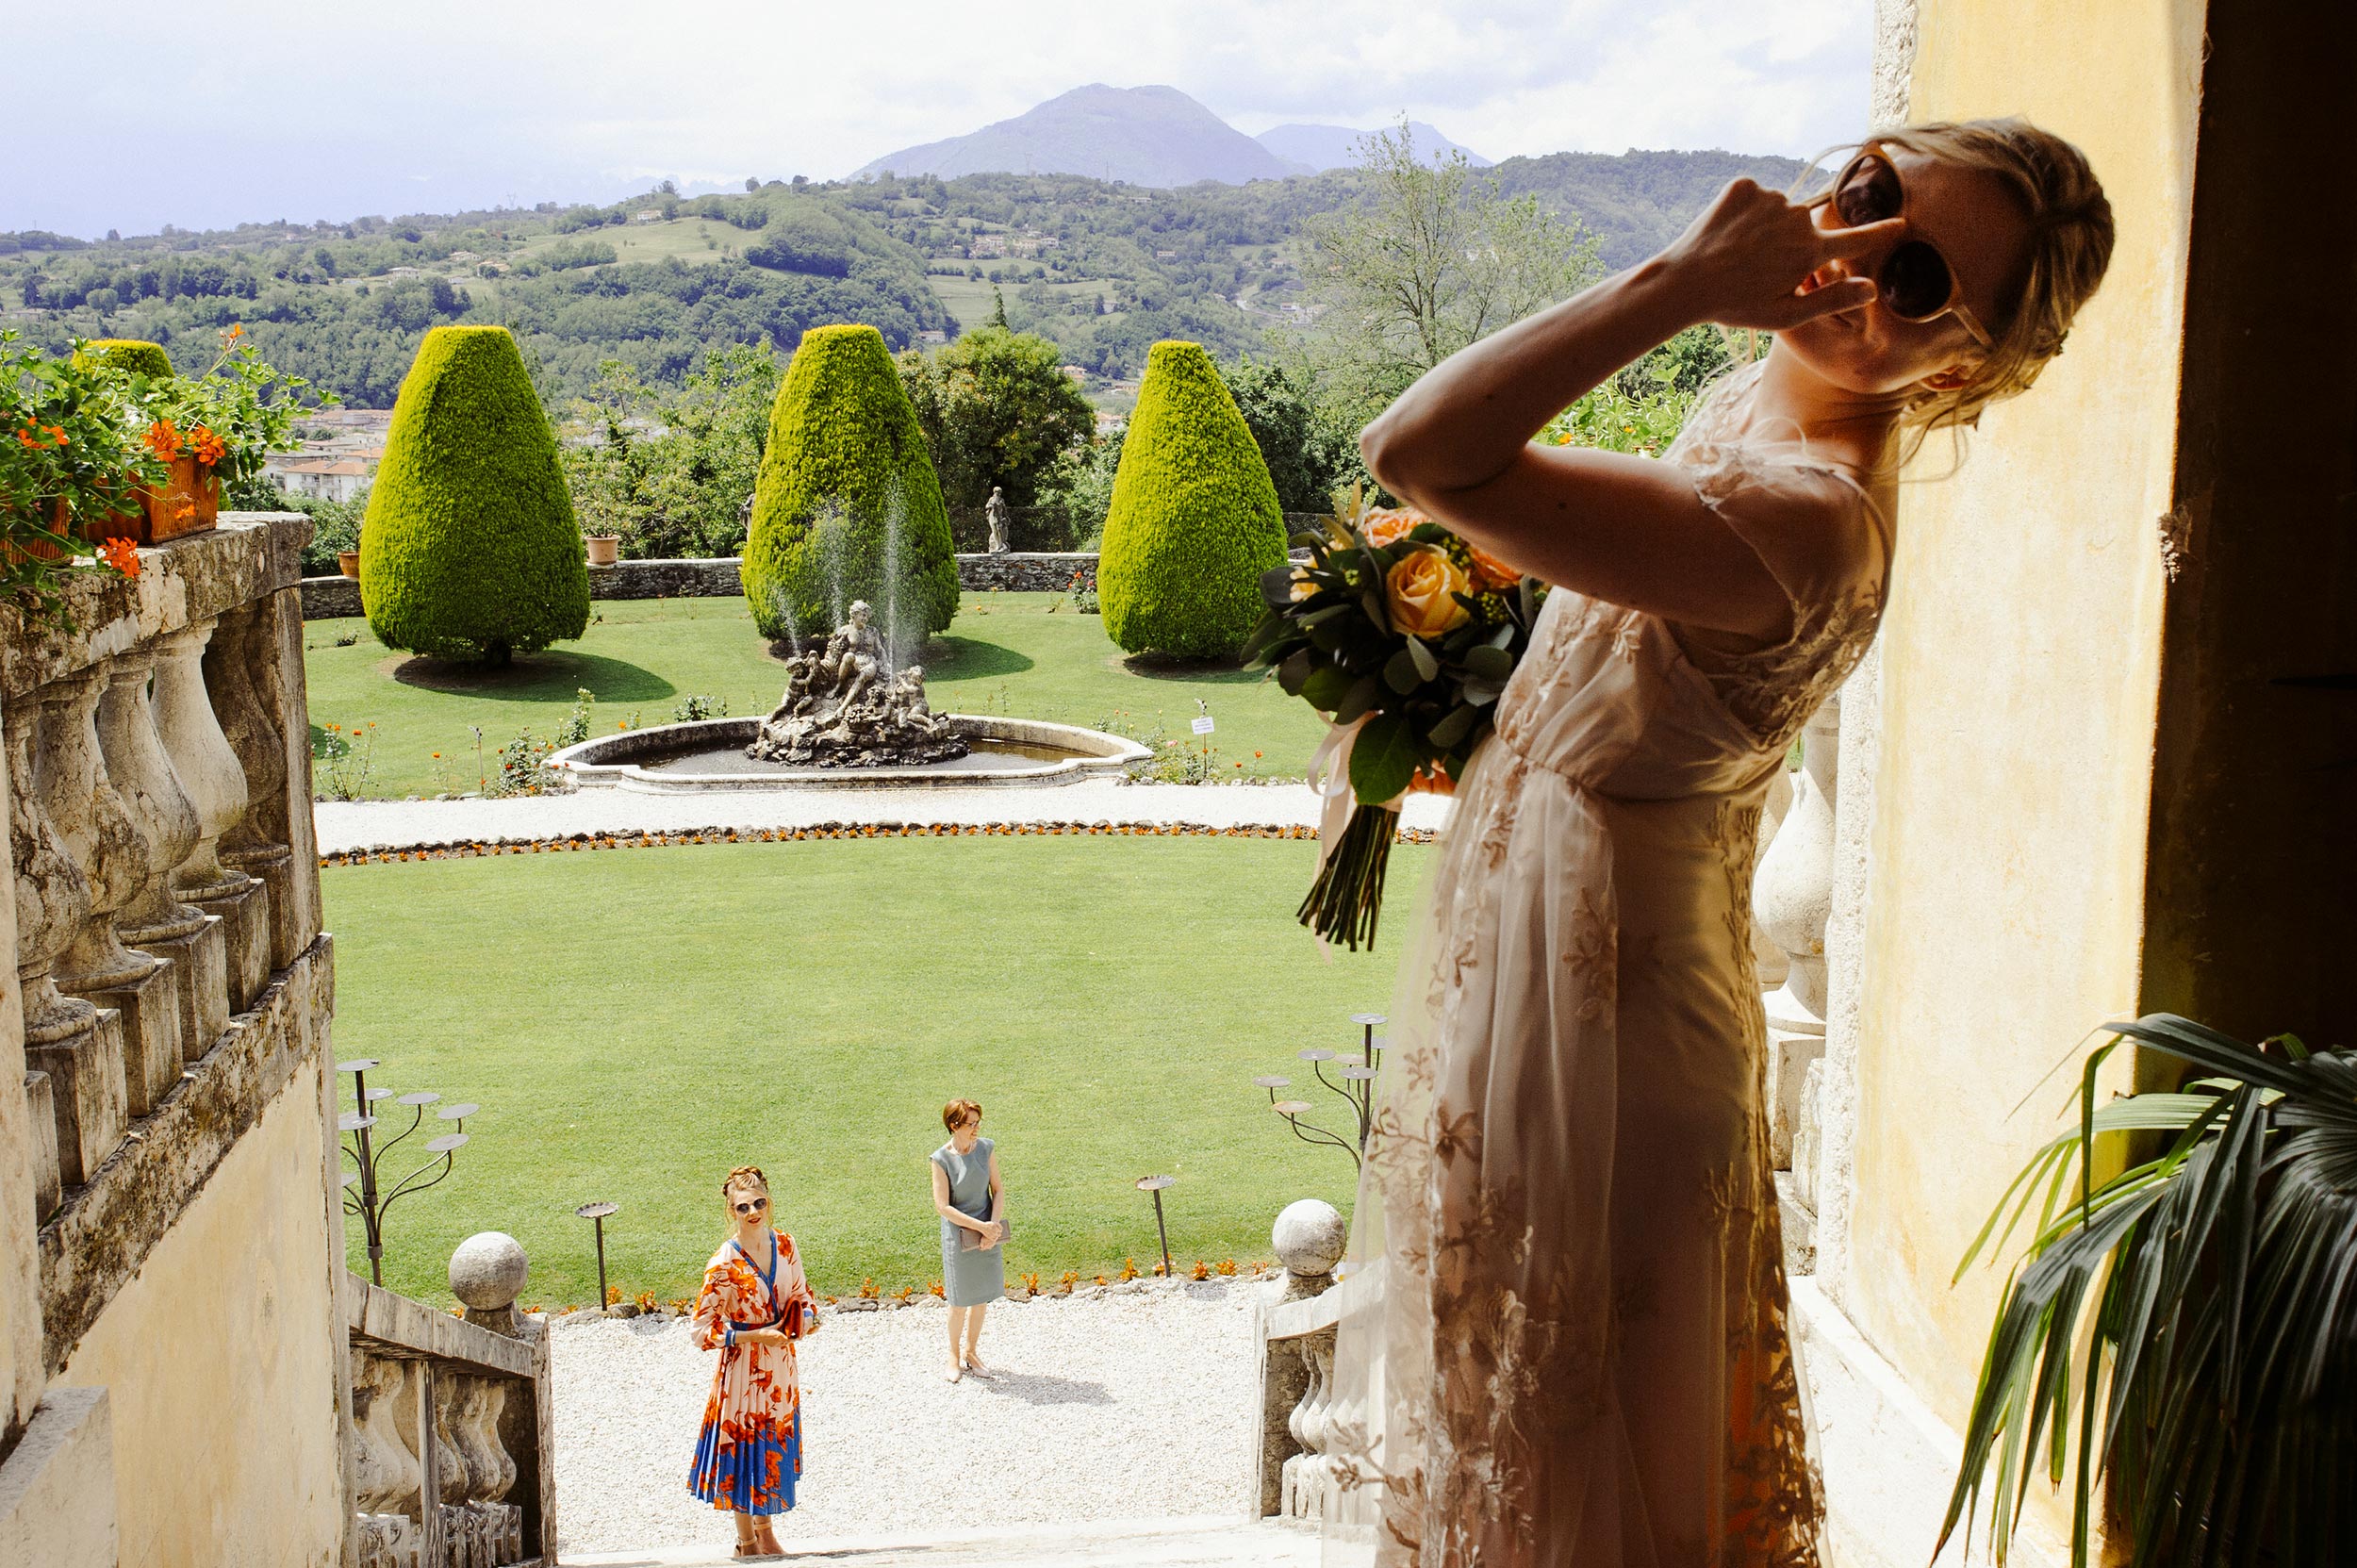 Villa Godi Malinverni chic Italian wedding la dolce vita destination photographer Alessandro Avenali